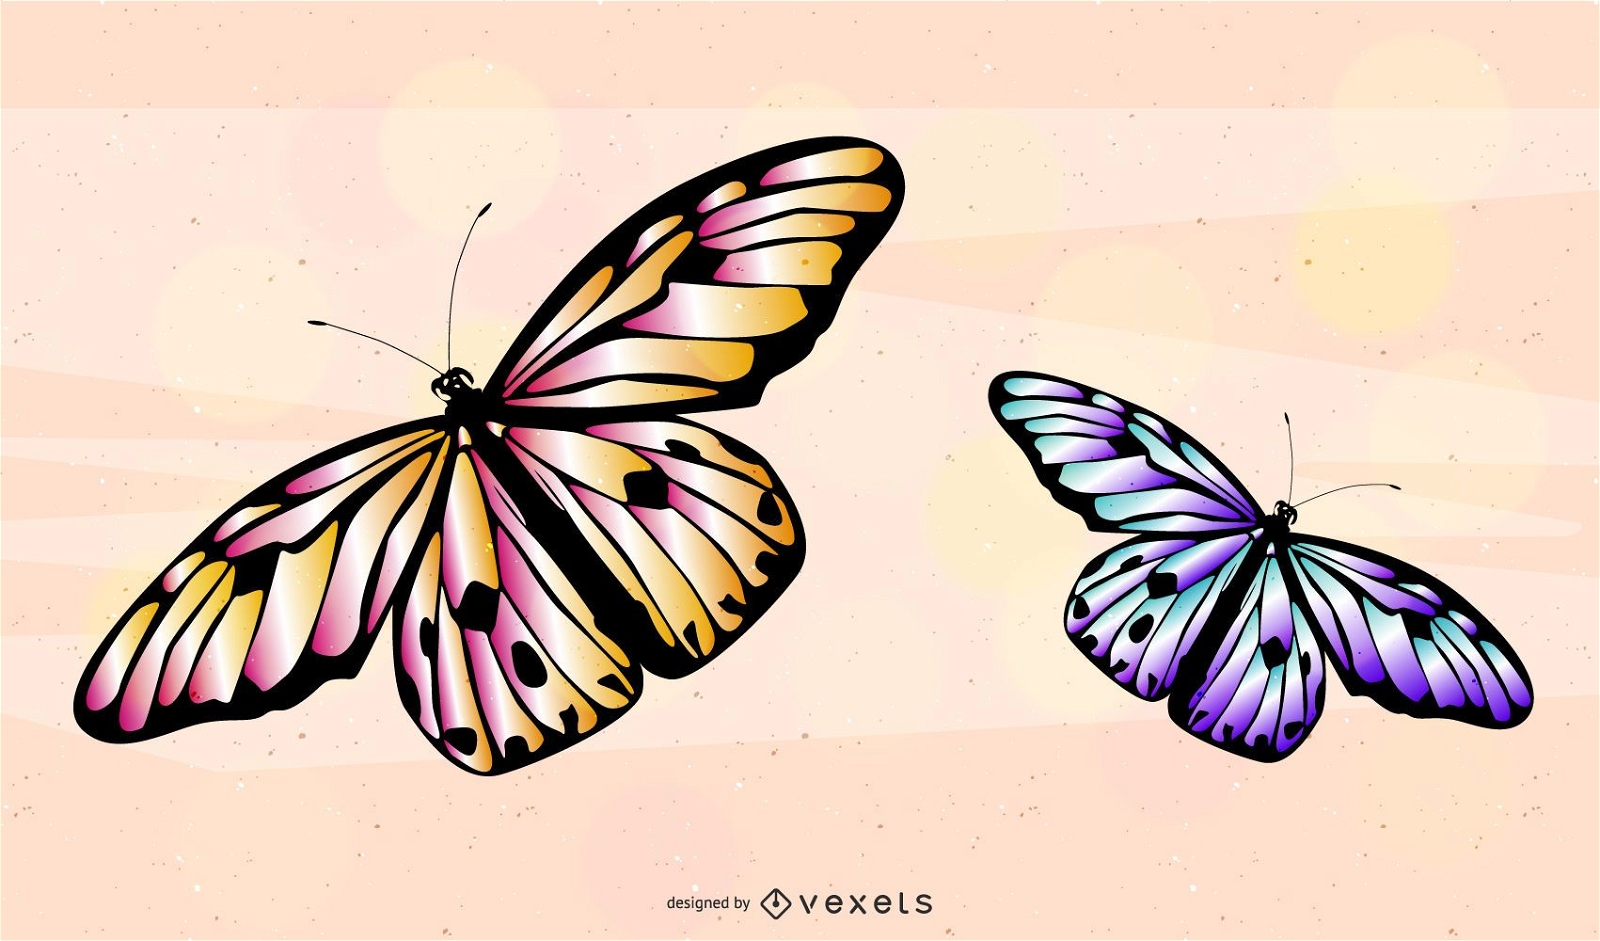 Monarch Butterfly 3D Model